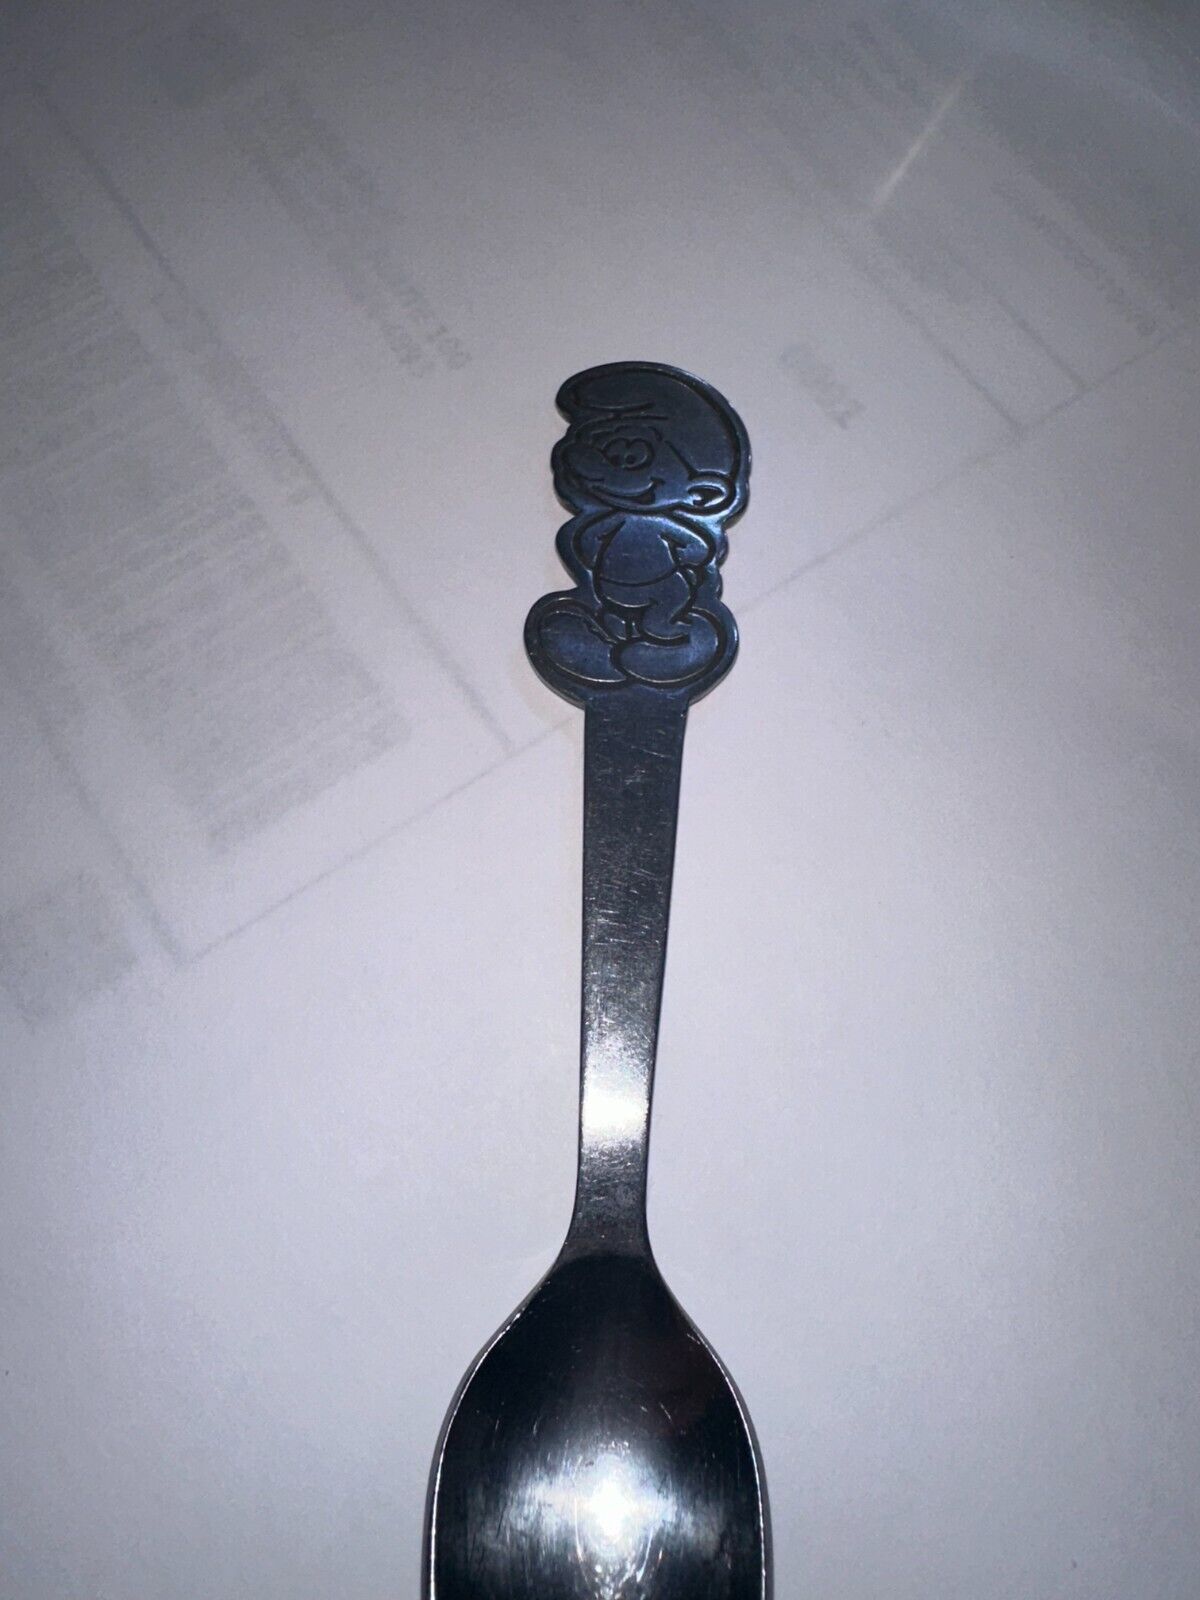 Peyo Danara Vintage Smurf Stamped Baby Spoon Stainless Steel Taiwan 5.5